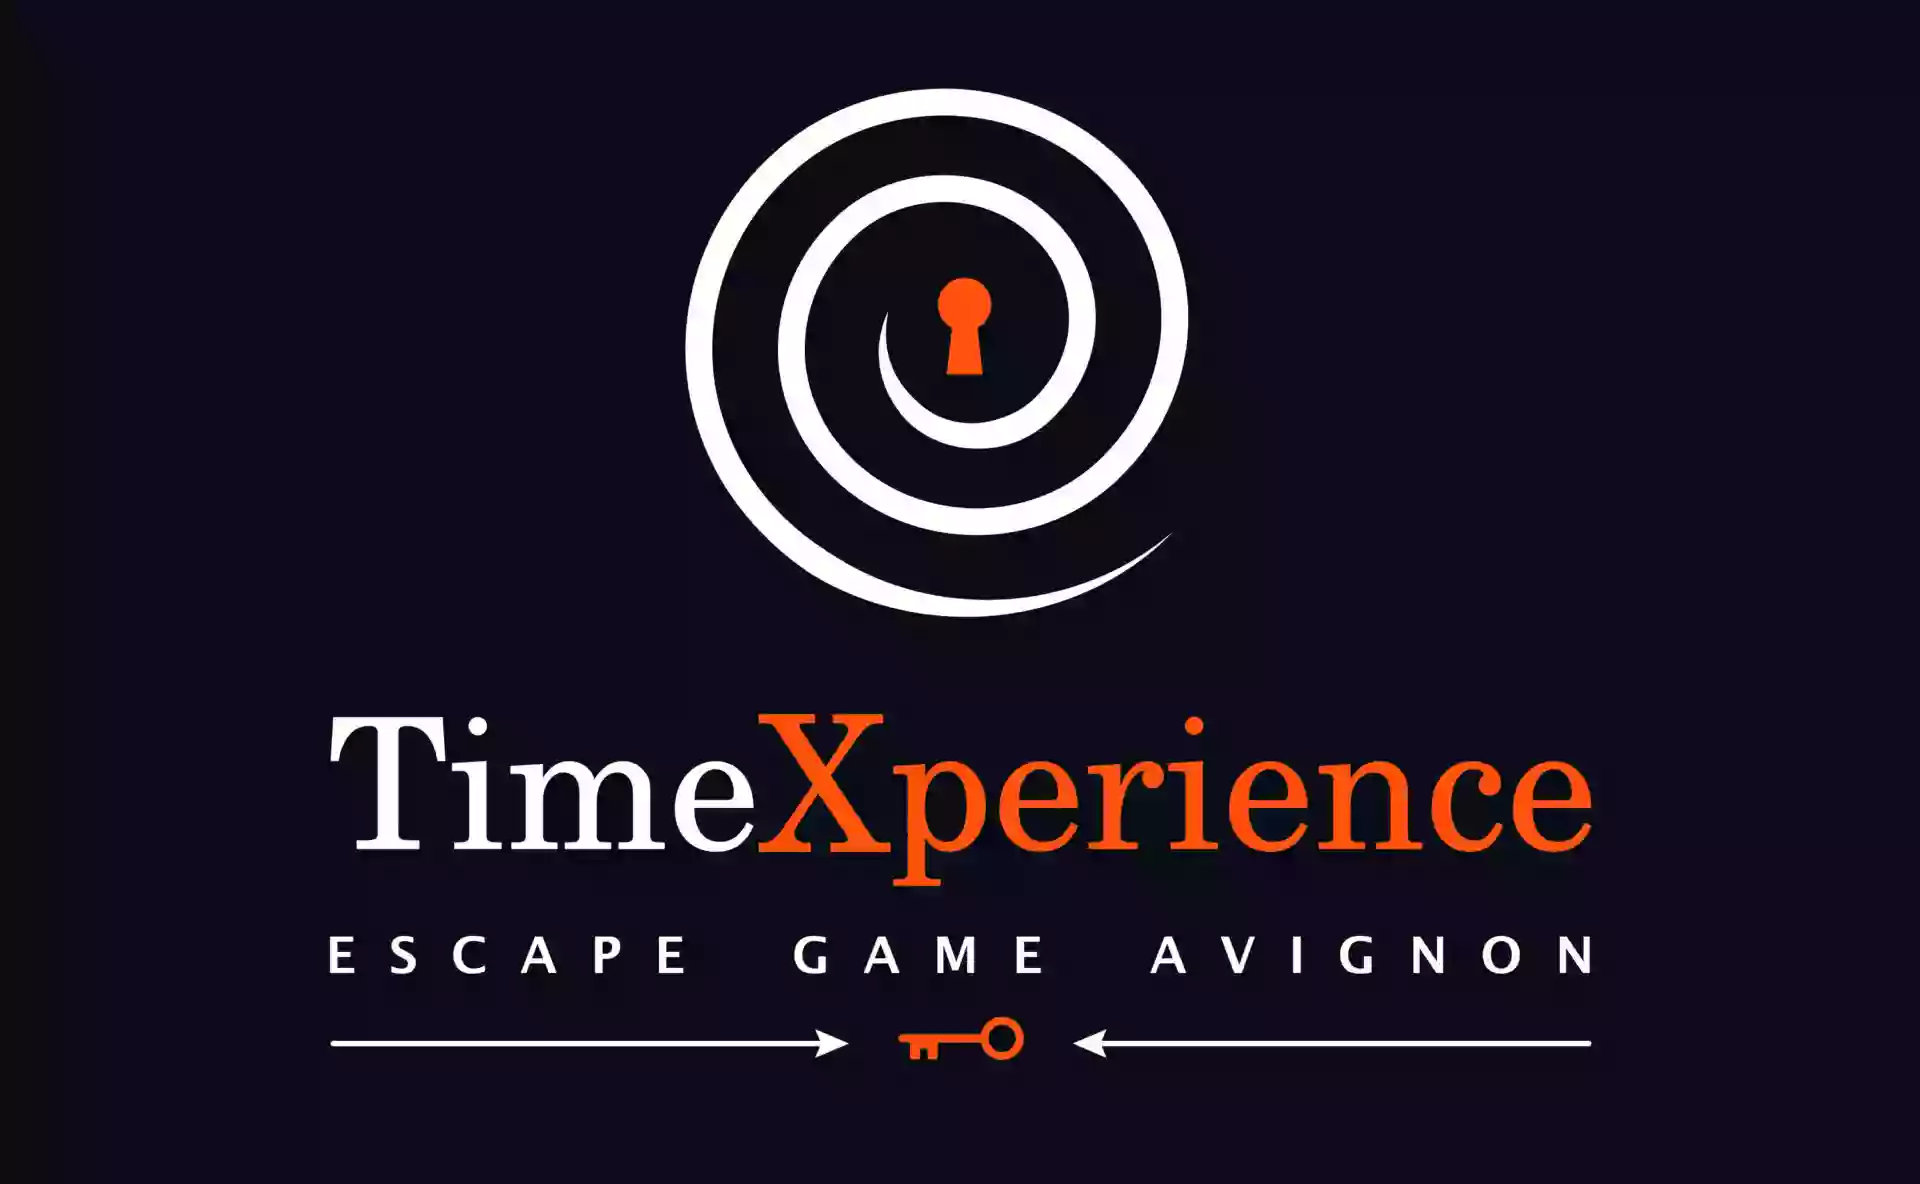 TimeXperience - Escape Game Avignon